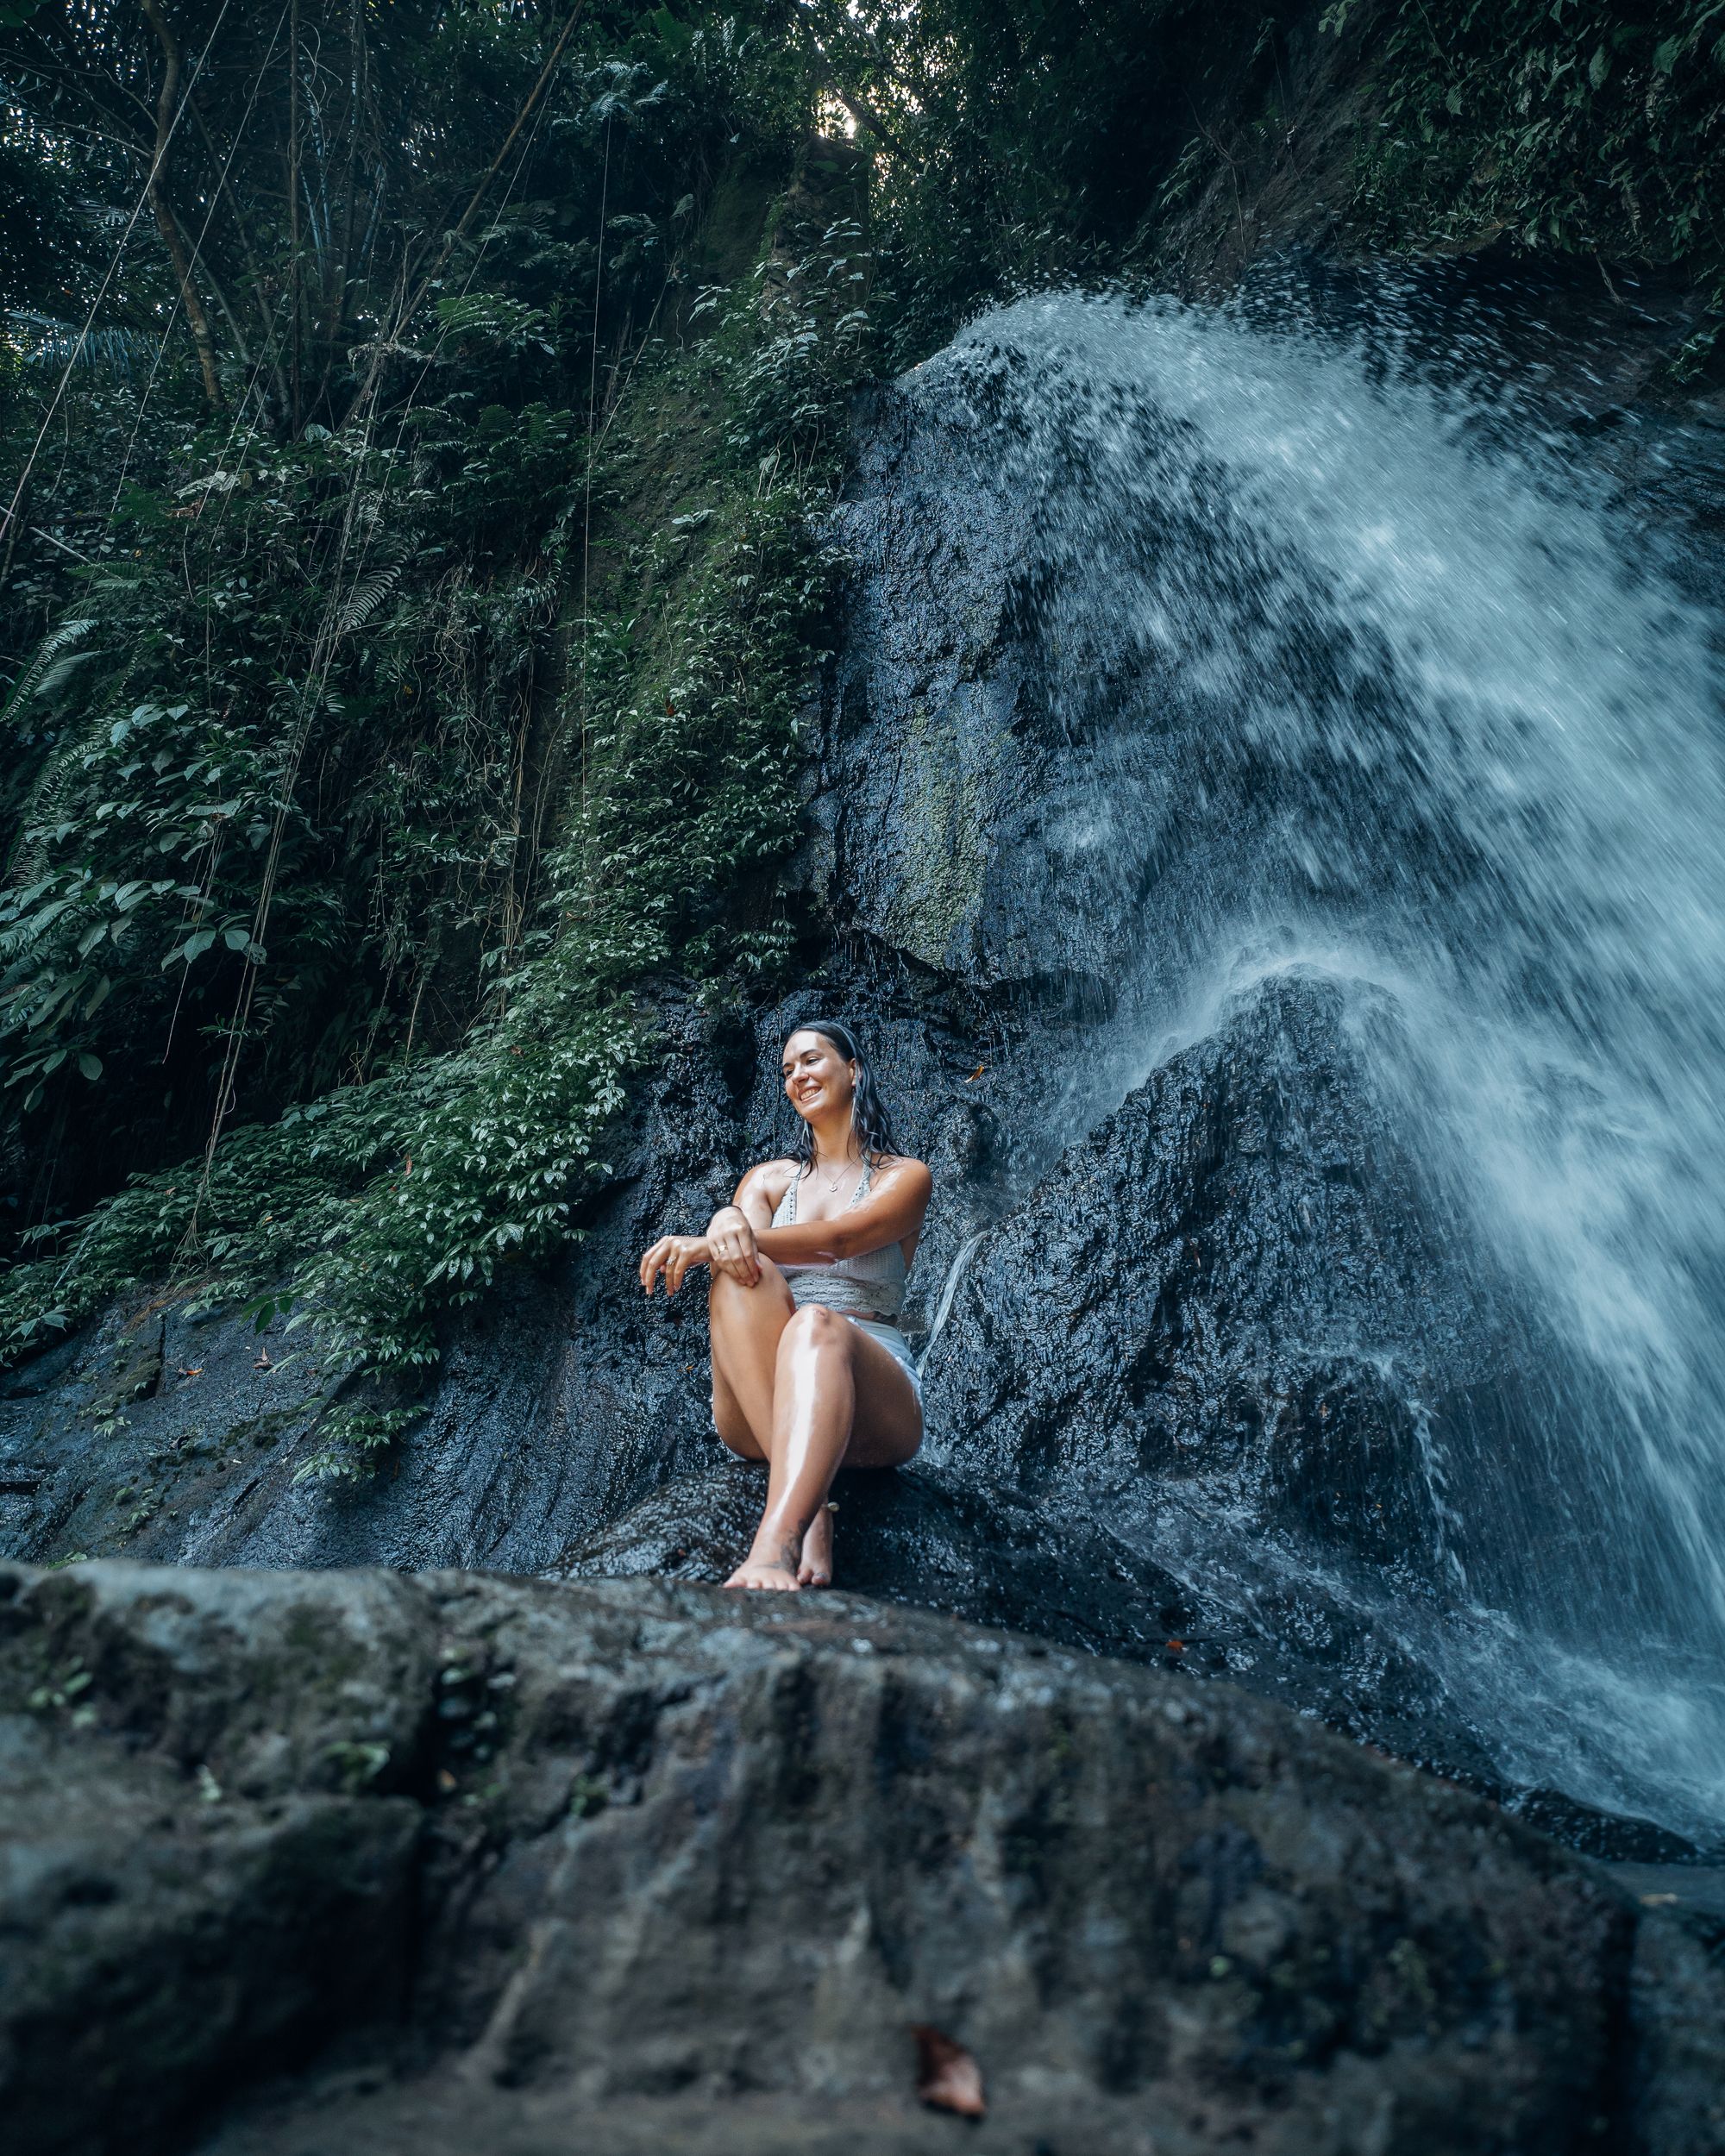 Eine Erfrischende Oase der Schönheit: der Taman Sari Wasserfall auf Bali